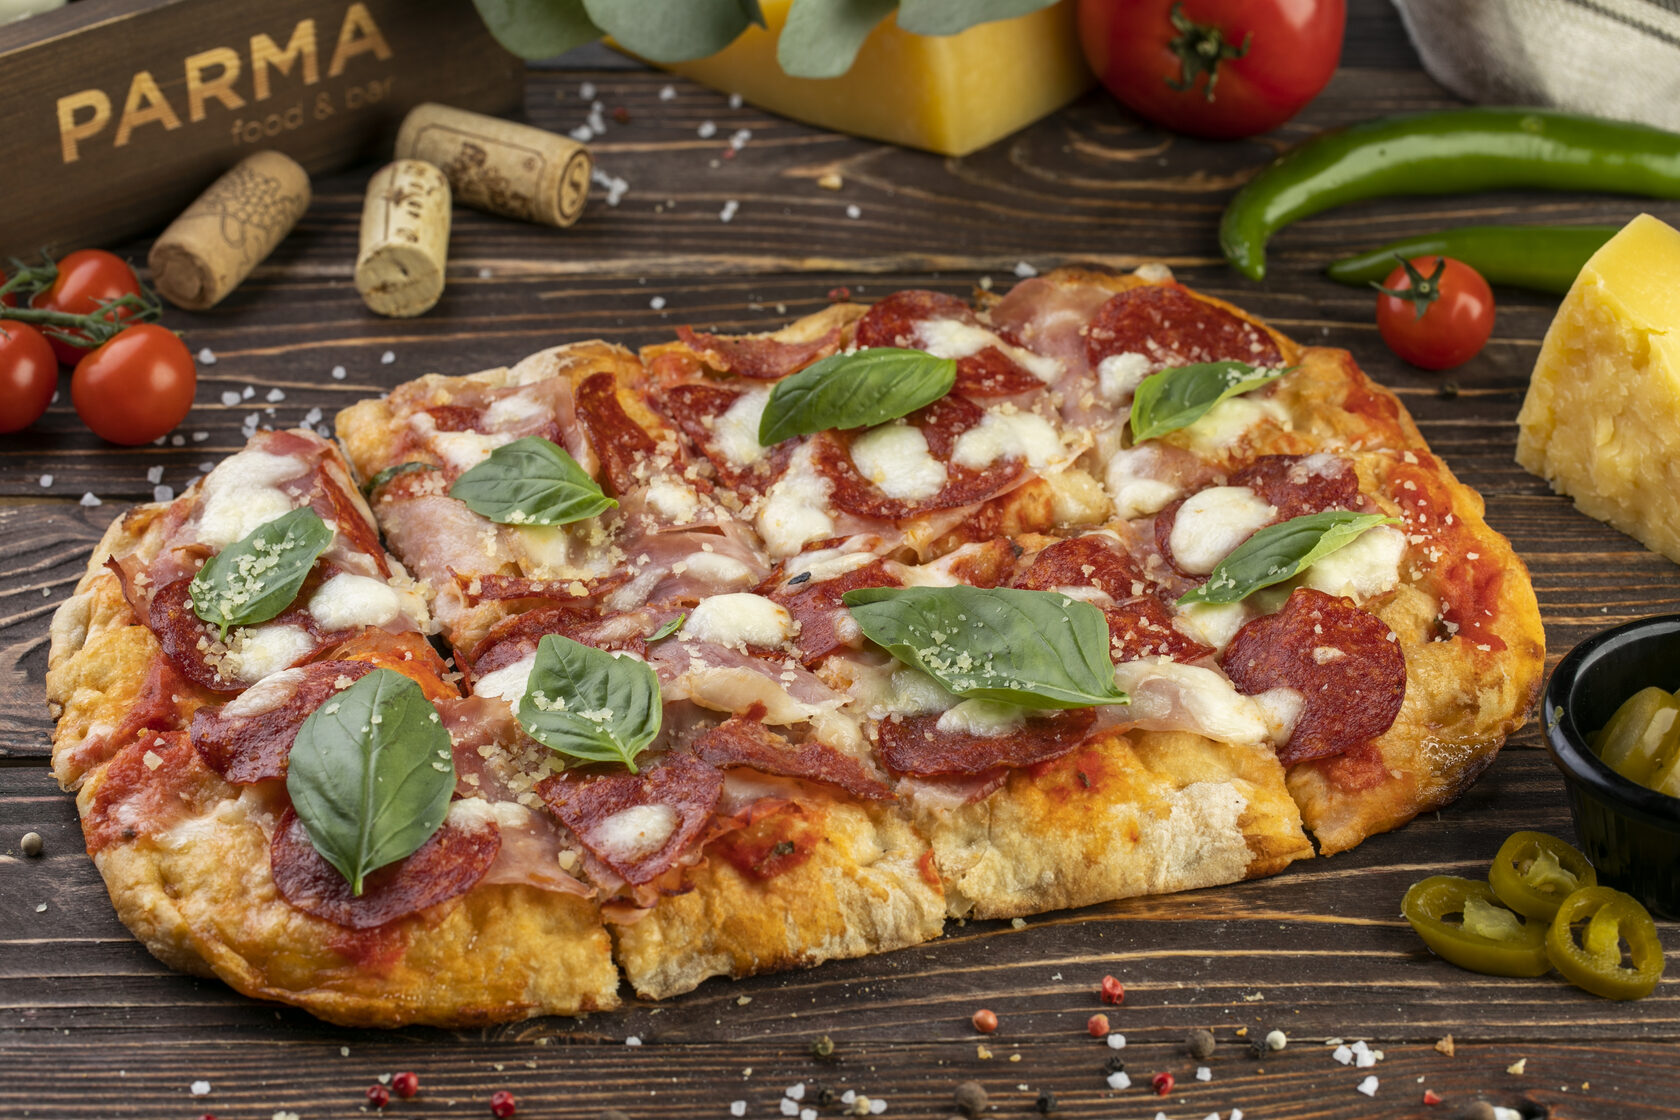 я хочу пиццу песто с пепперони и сосисками так же хочу другую с оливками фото 93